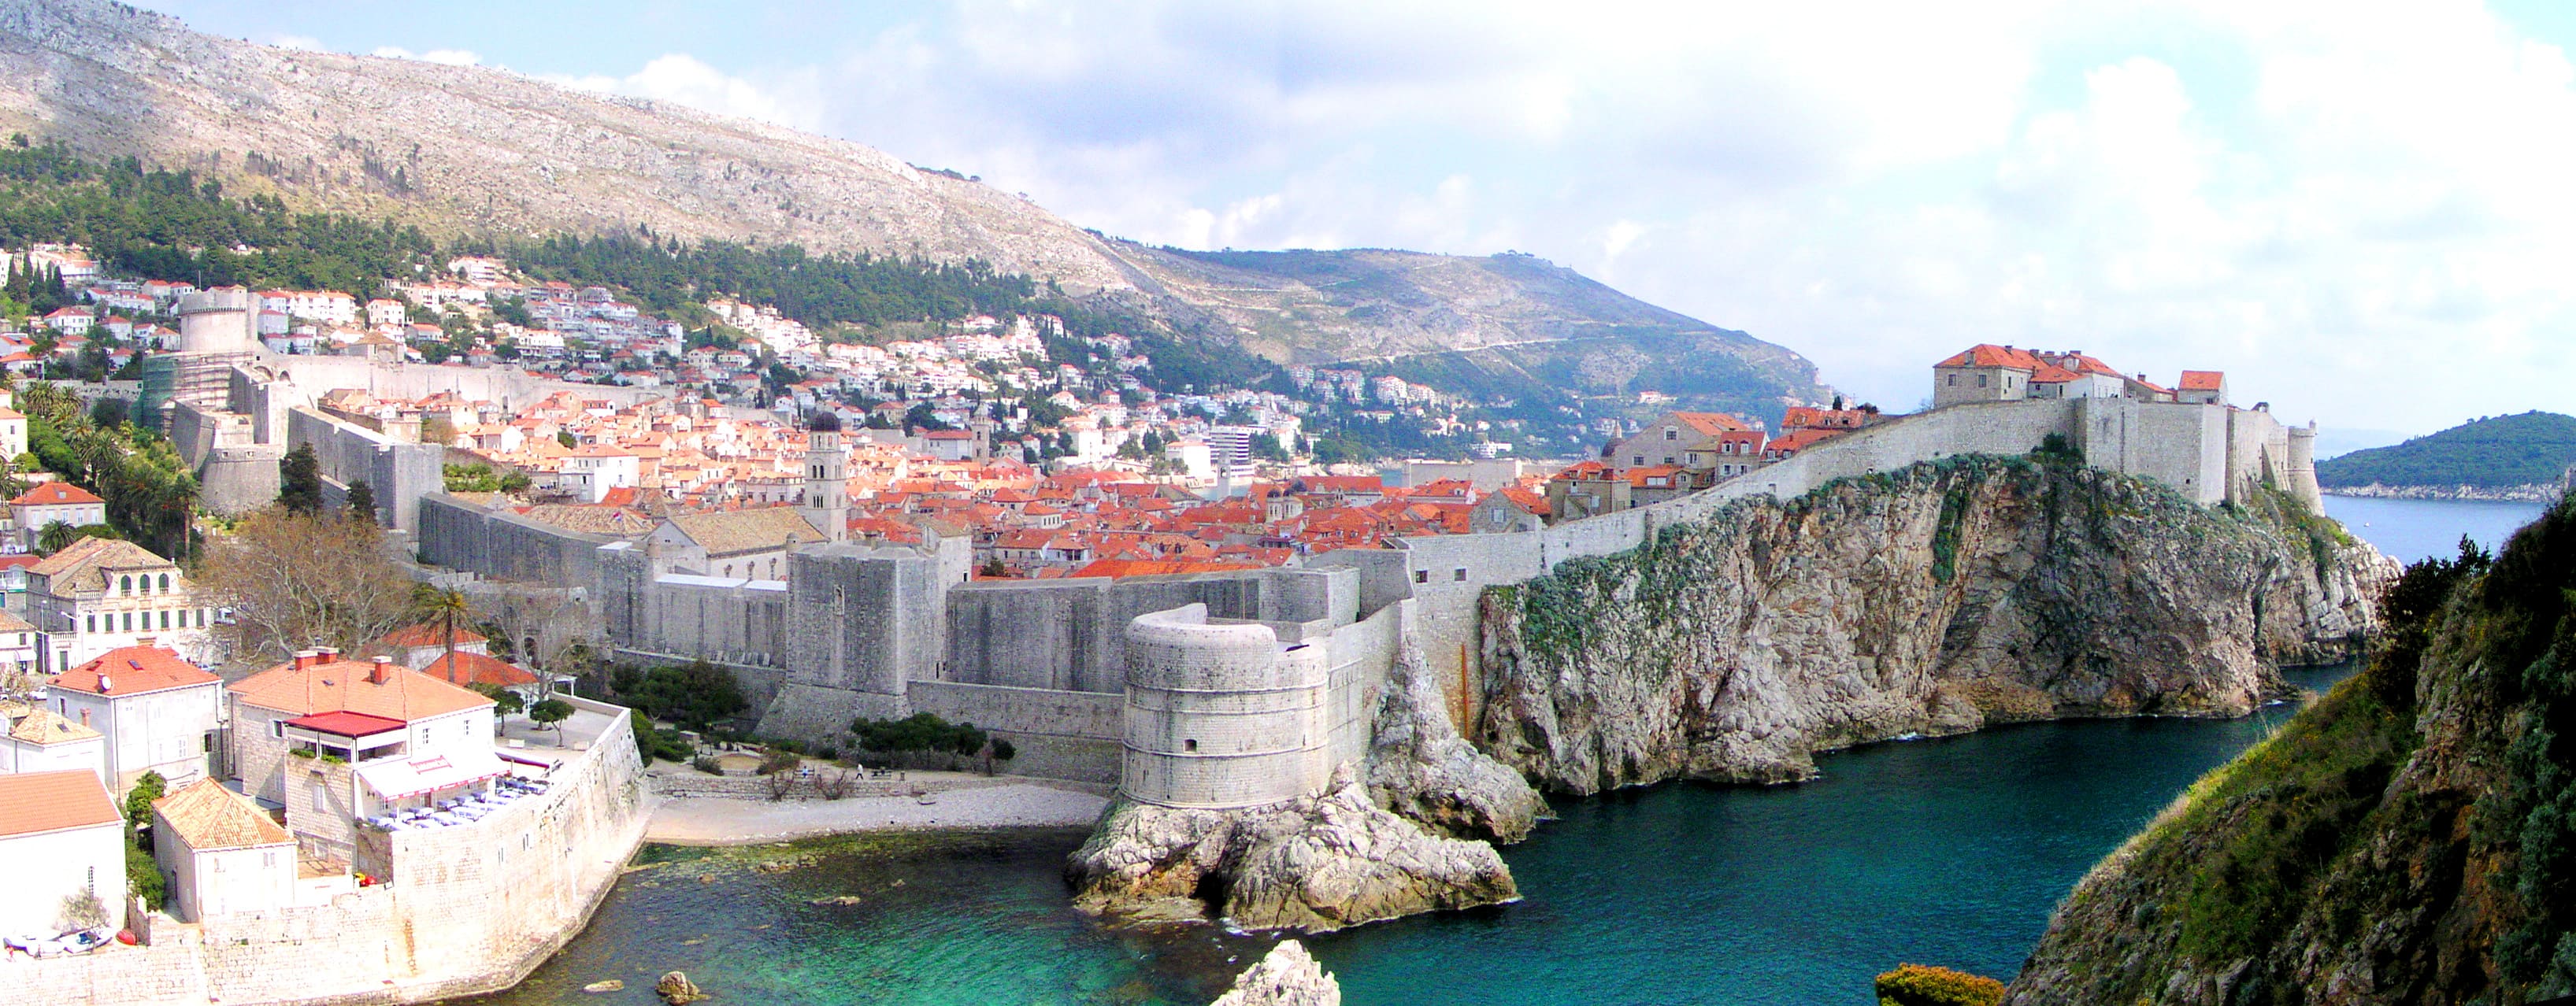 Dubrovnik, nekdanja Raguza